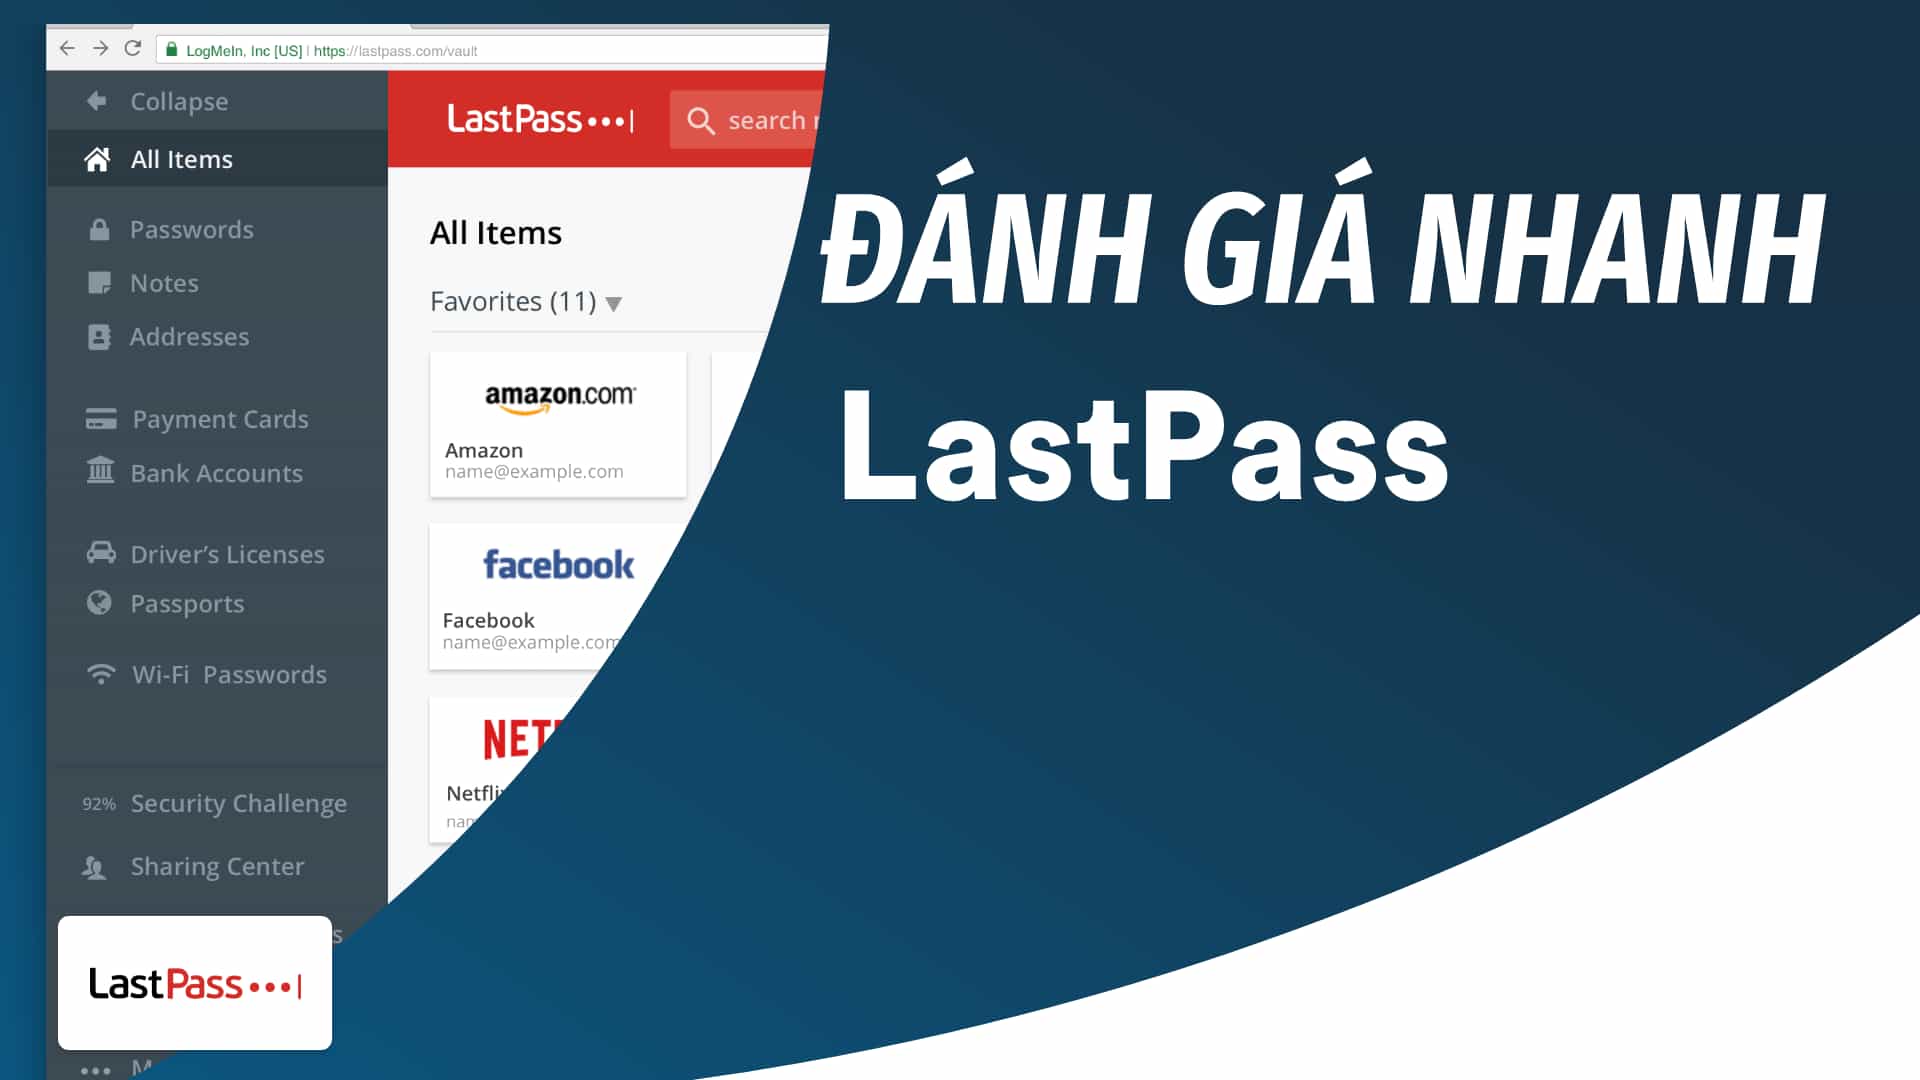 Đánh giá nhanh LastPass - Chọn LastPass Premium hay phiên bản miễn phí quá nhiều giới hạn?